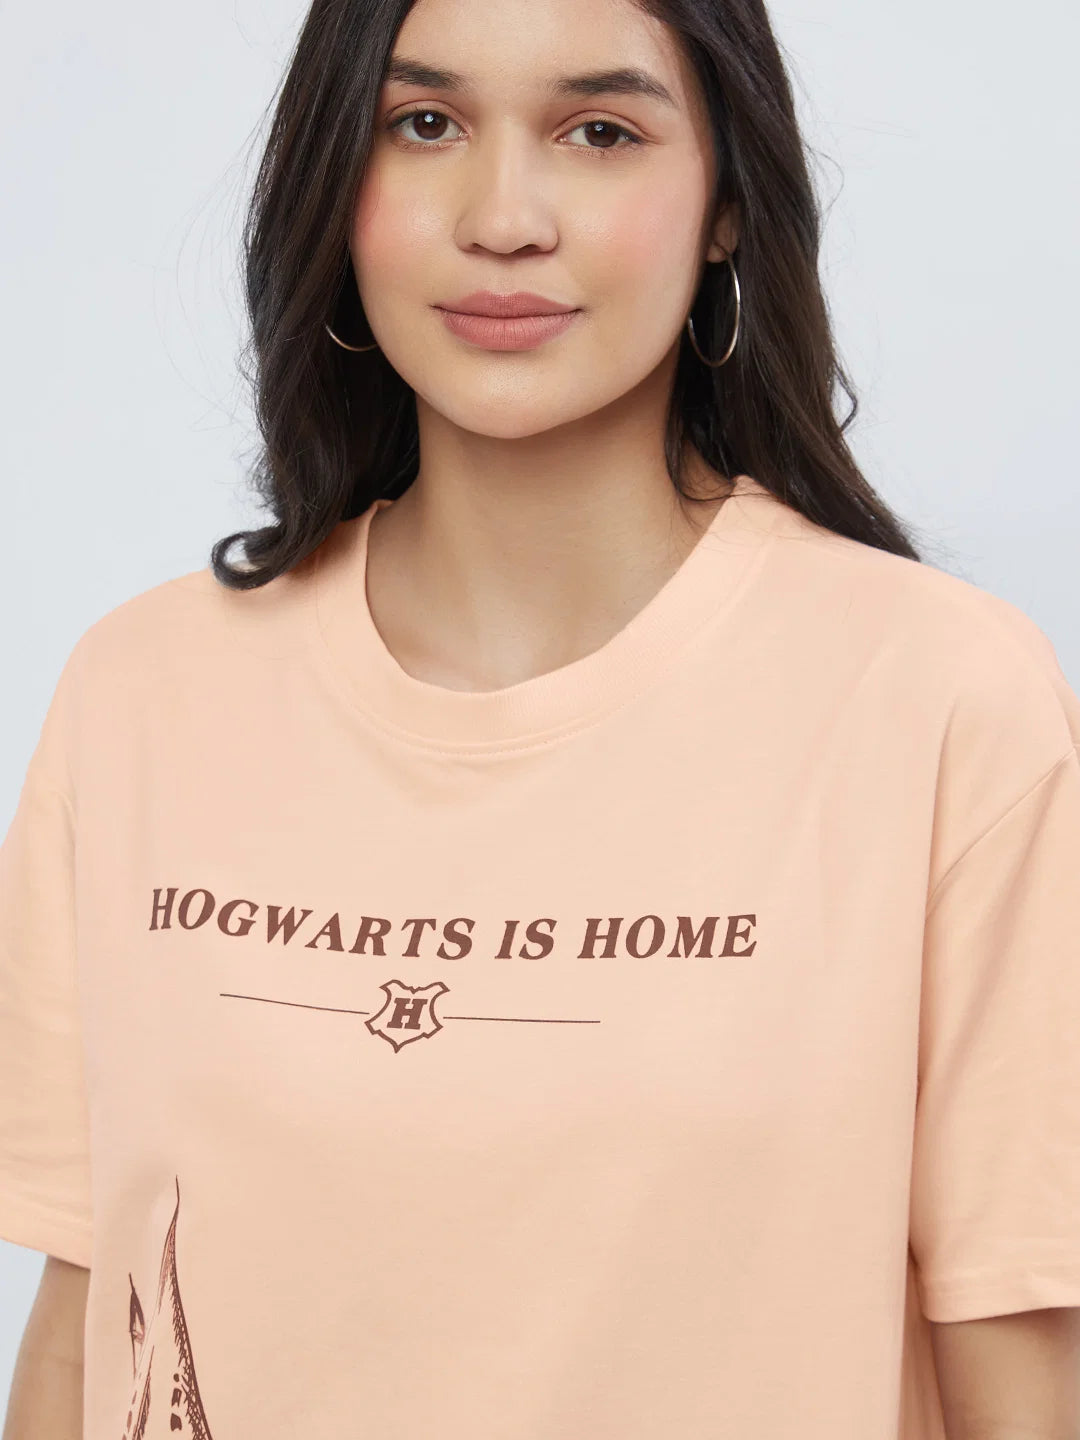 Harry Potter Hogwarts Is Home (UK version)